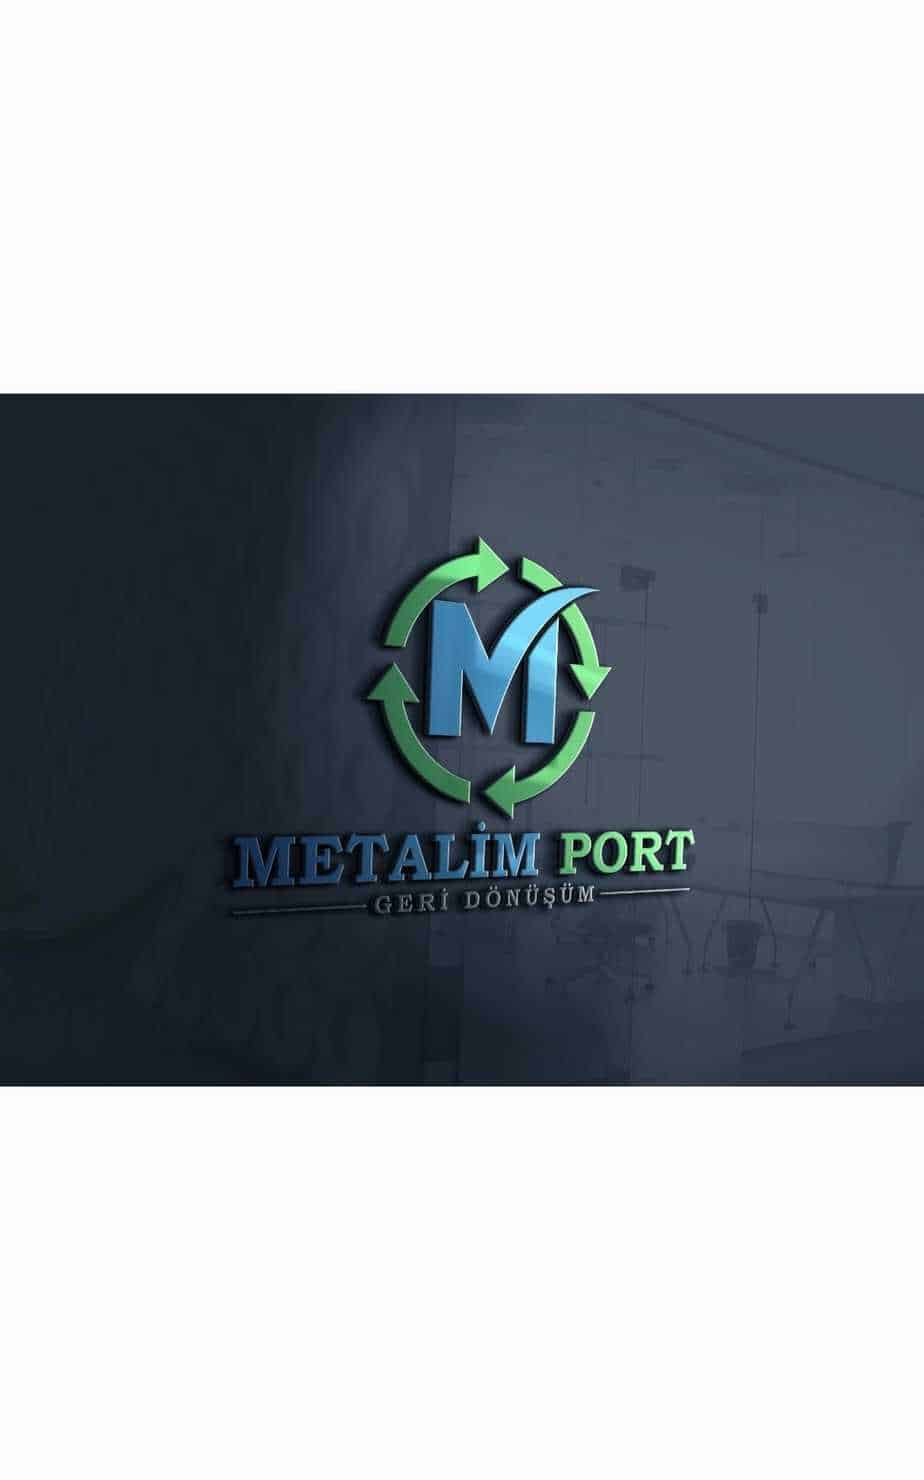 Metalim Port Geri Dönüşüm